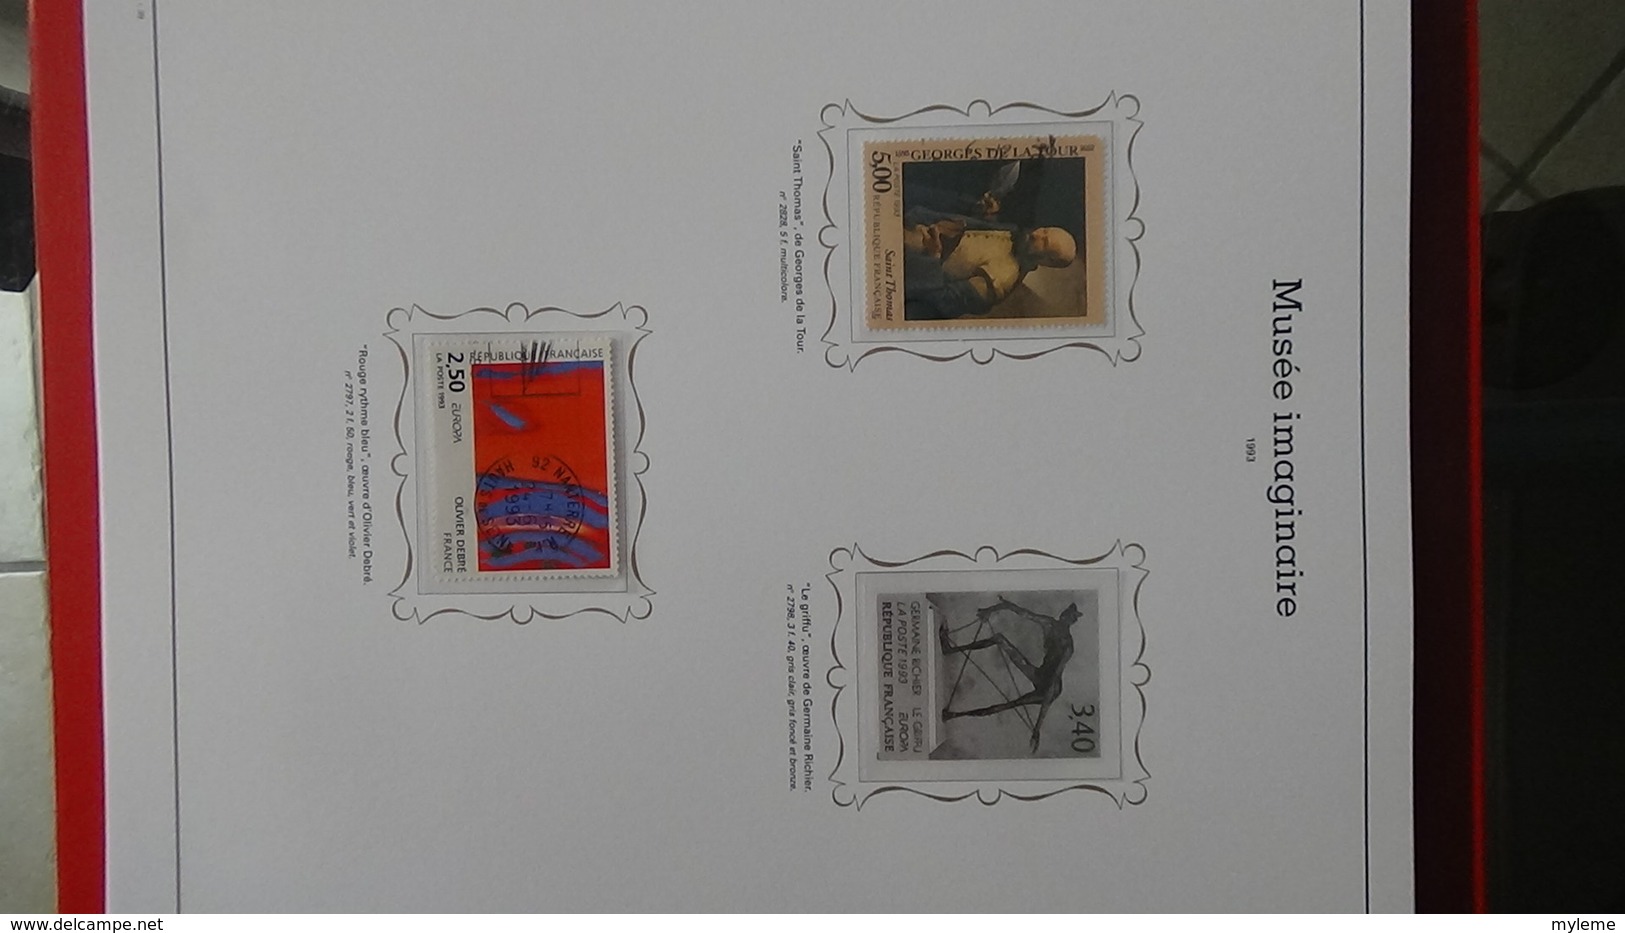 Album de timbres du musée imaginaire. Pas commun